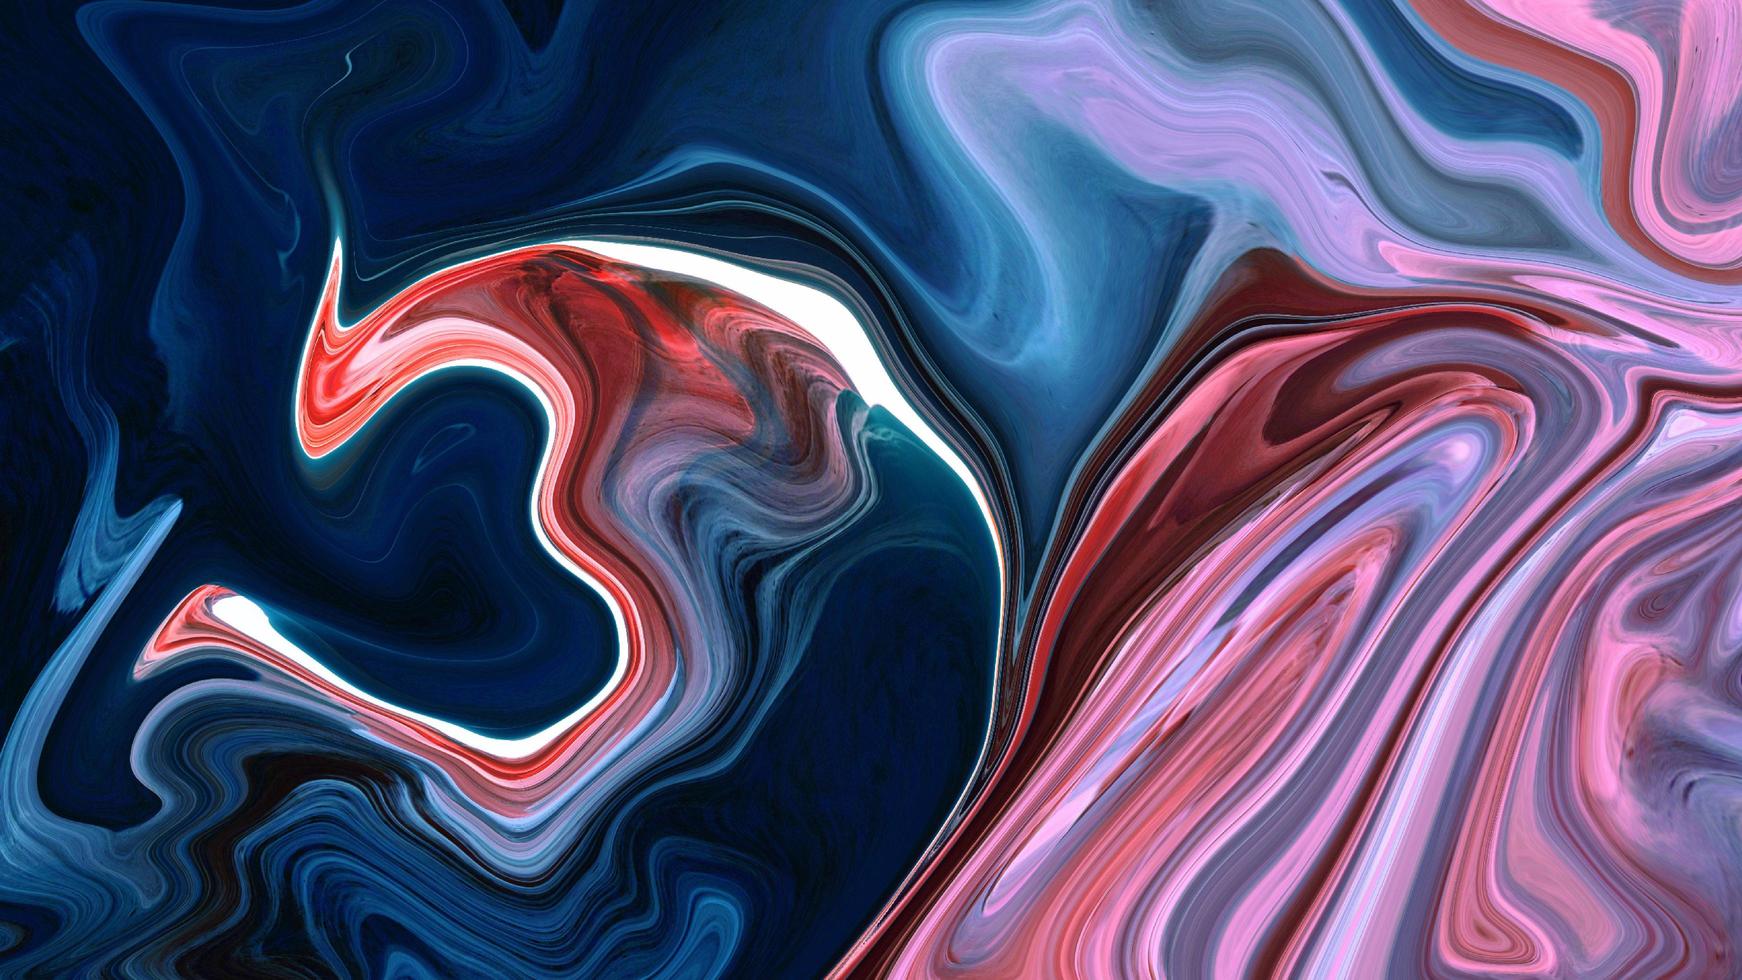 texture spirale de luxe abstrait tourbillon bleu foncé coloré et motif acrylique liquide de peinture sur noir. photo